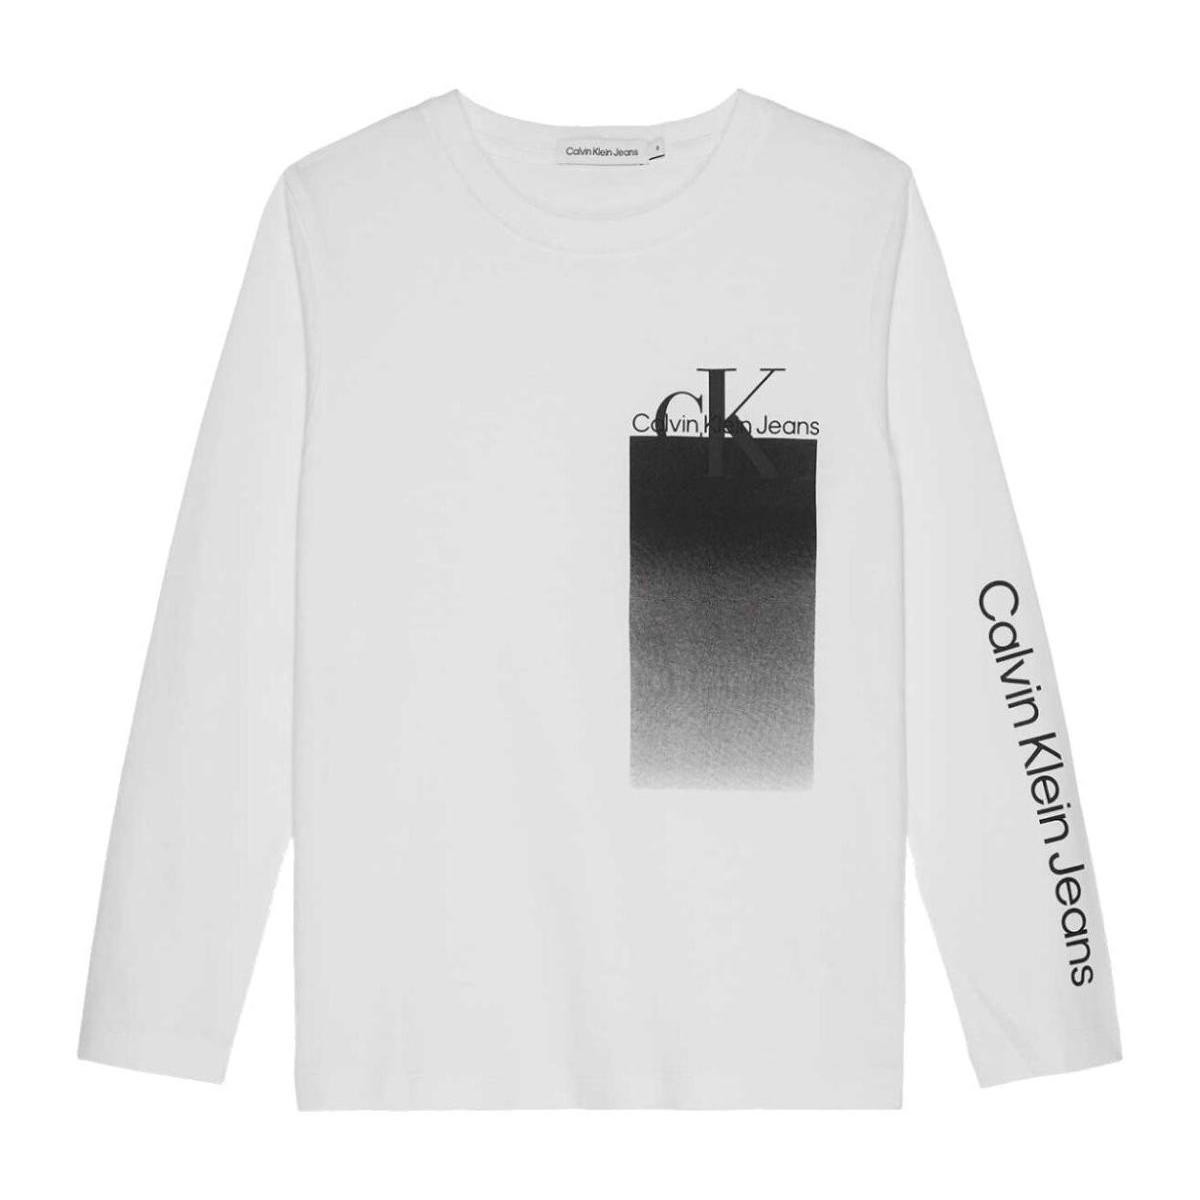 Kleidung Jungen T-Shirts Calvin Klein Jeans  Weiss